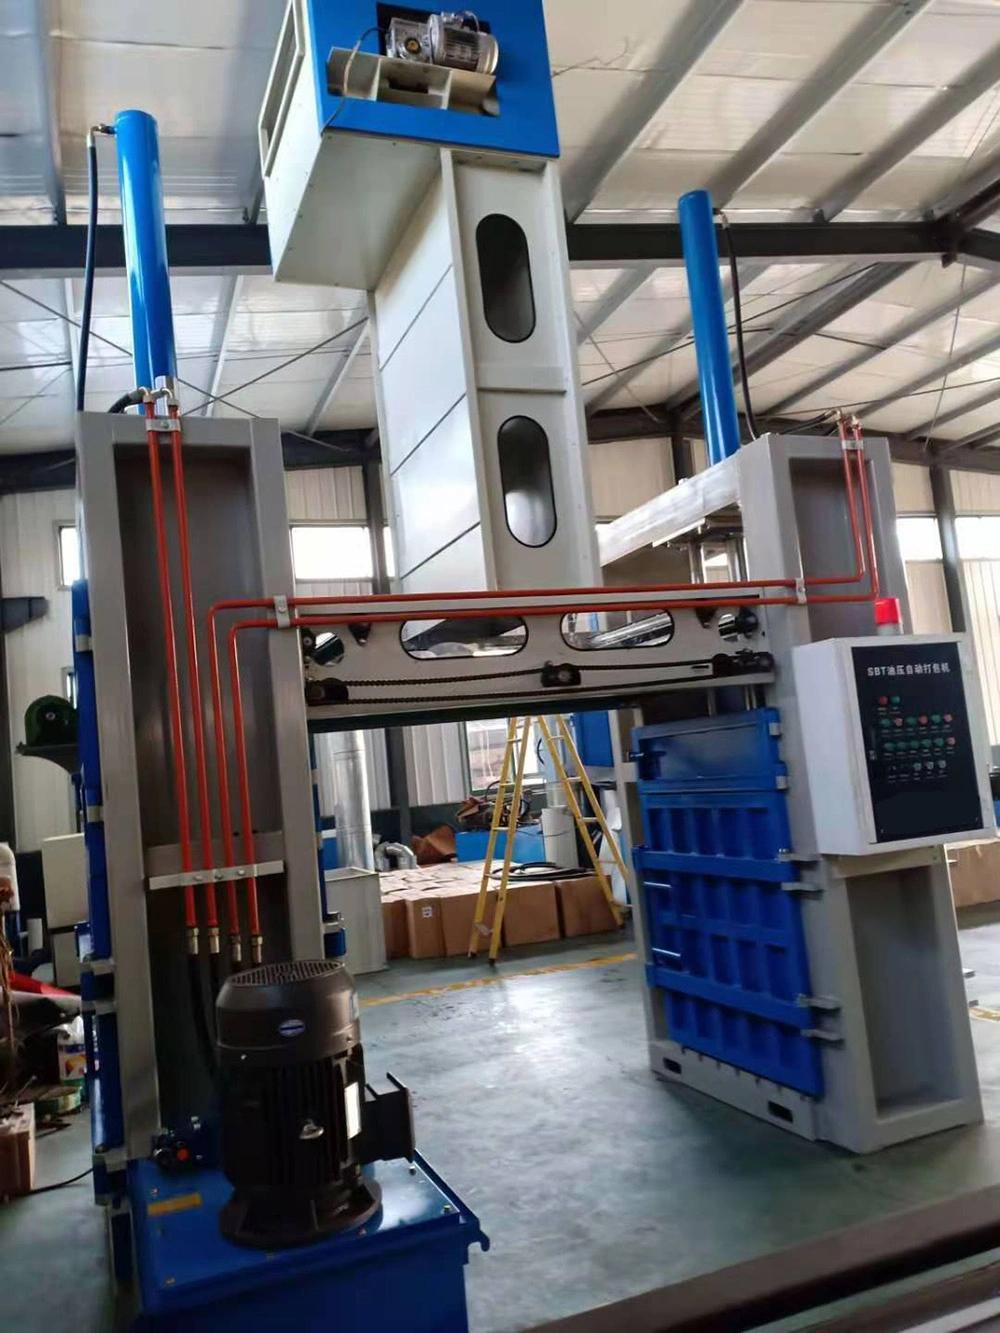 Semi-Automatic Waste Paper Hydraulic Baling Press